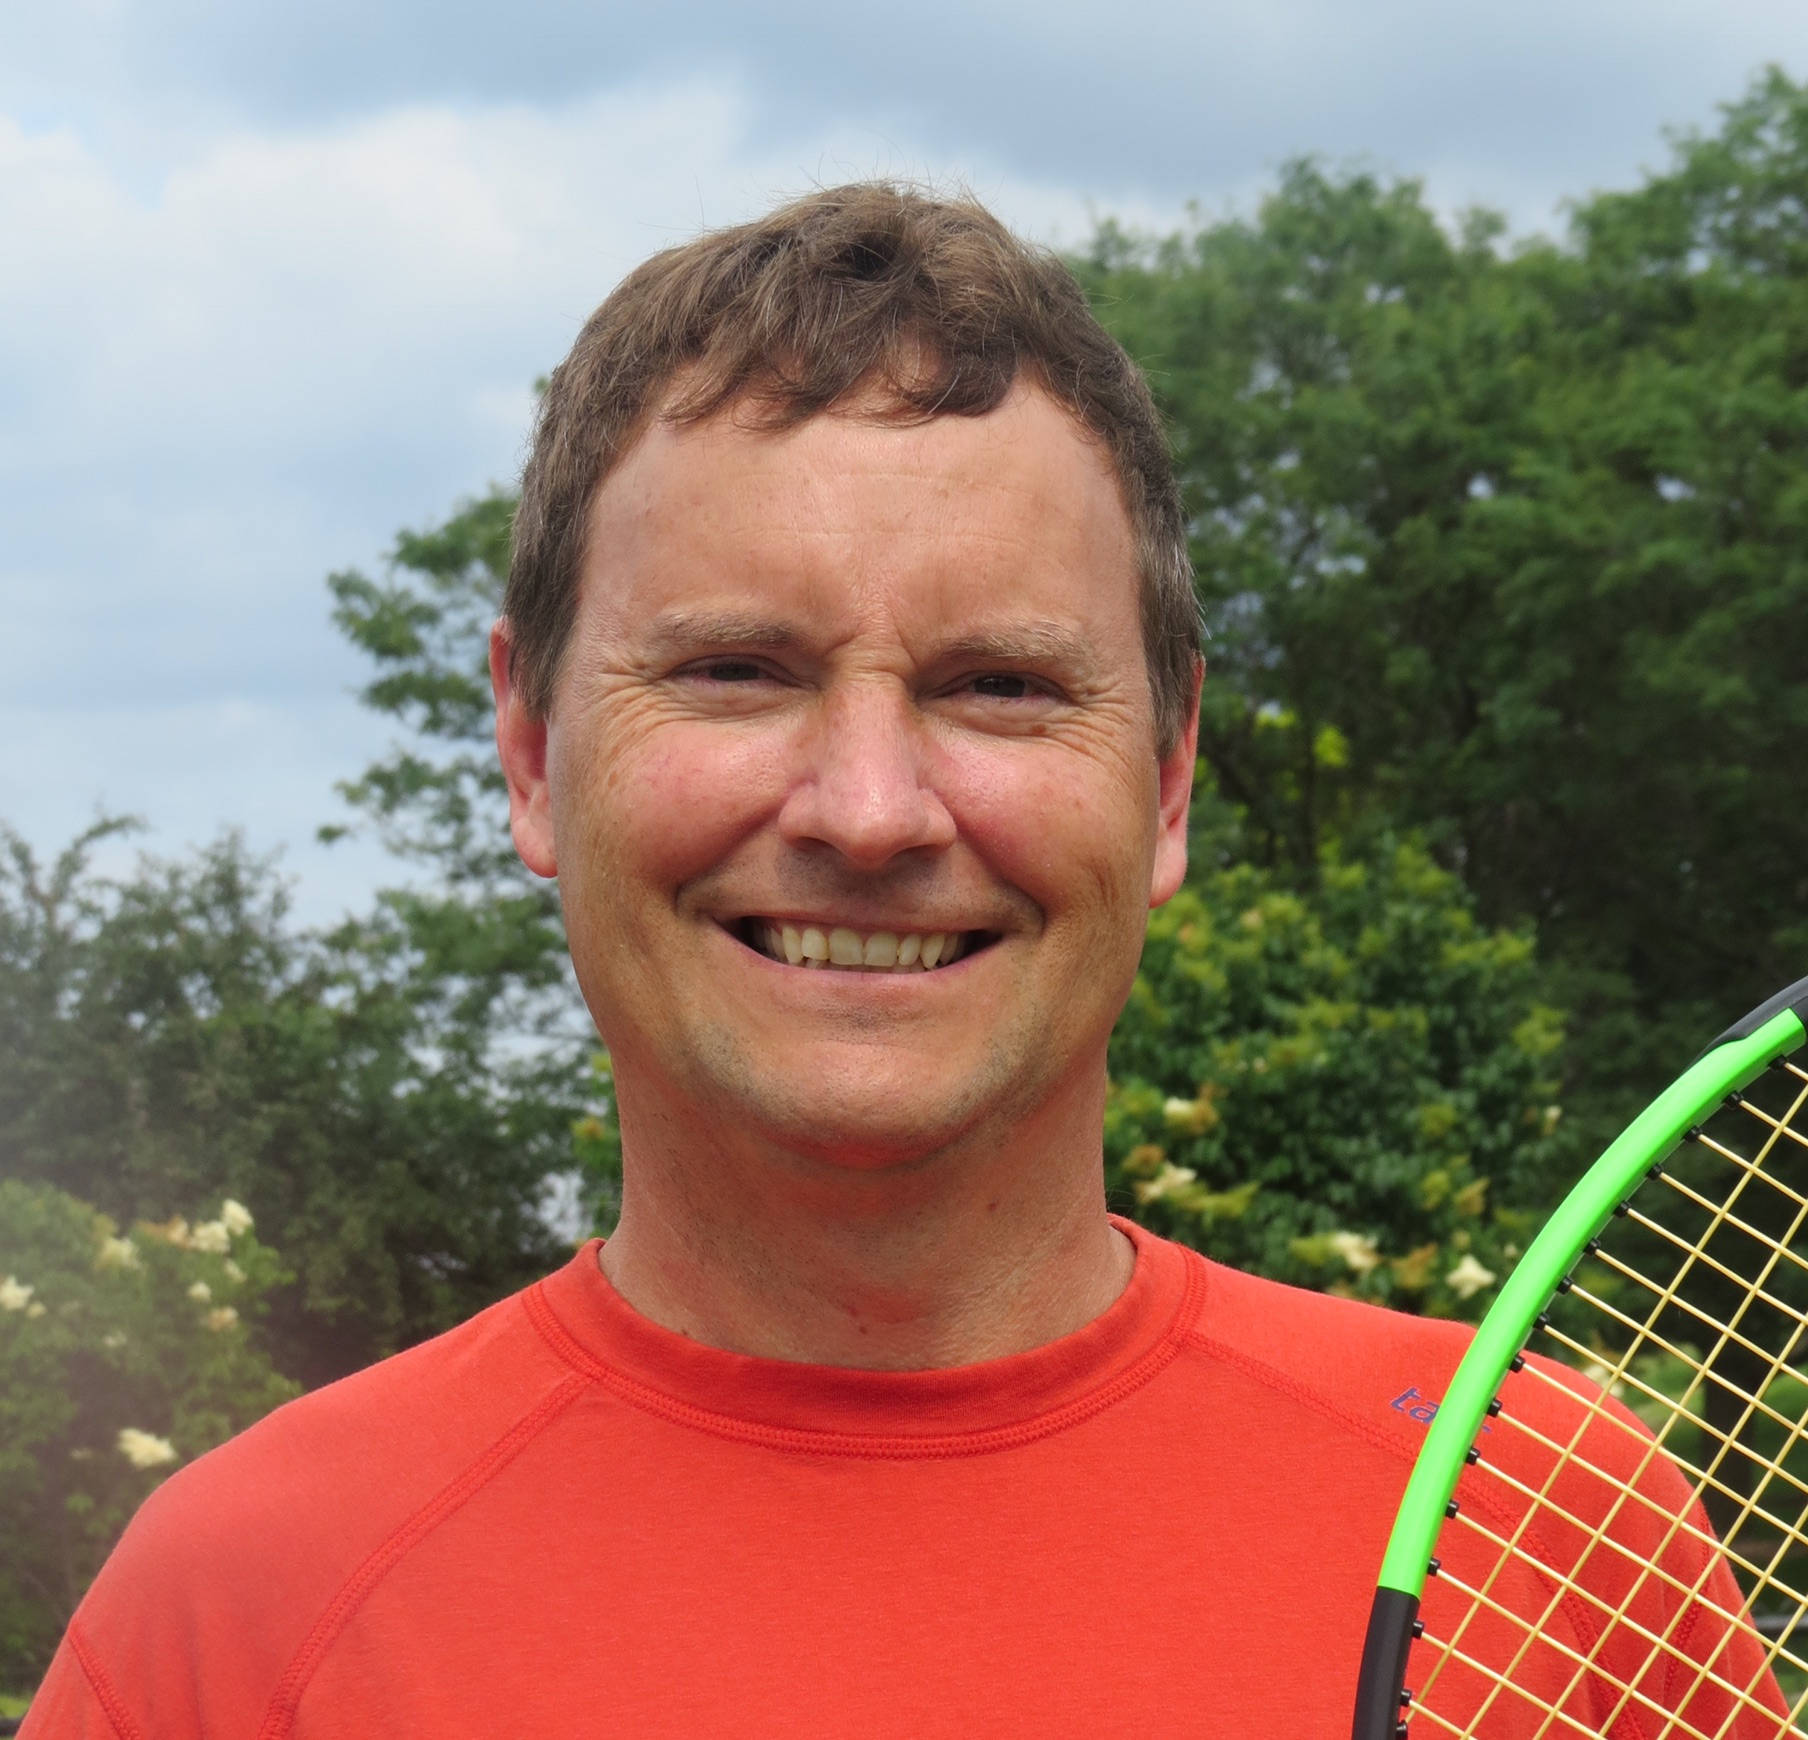 Mark E. teaches tennis lessons in Eagan, MN